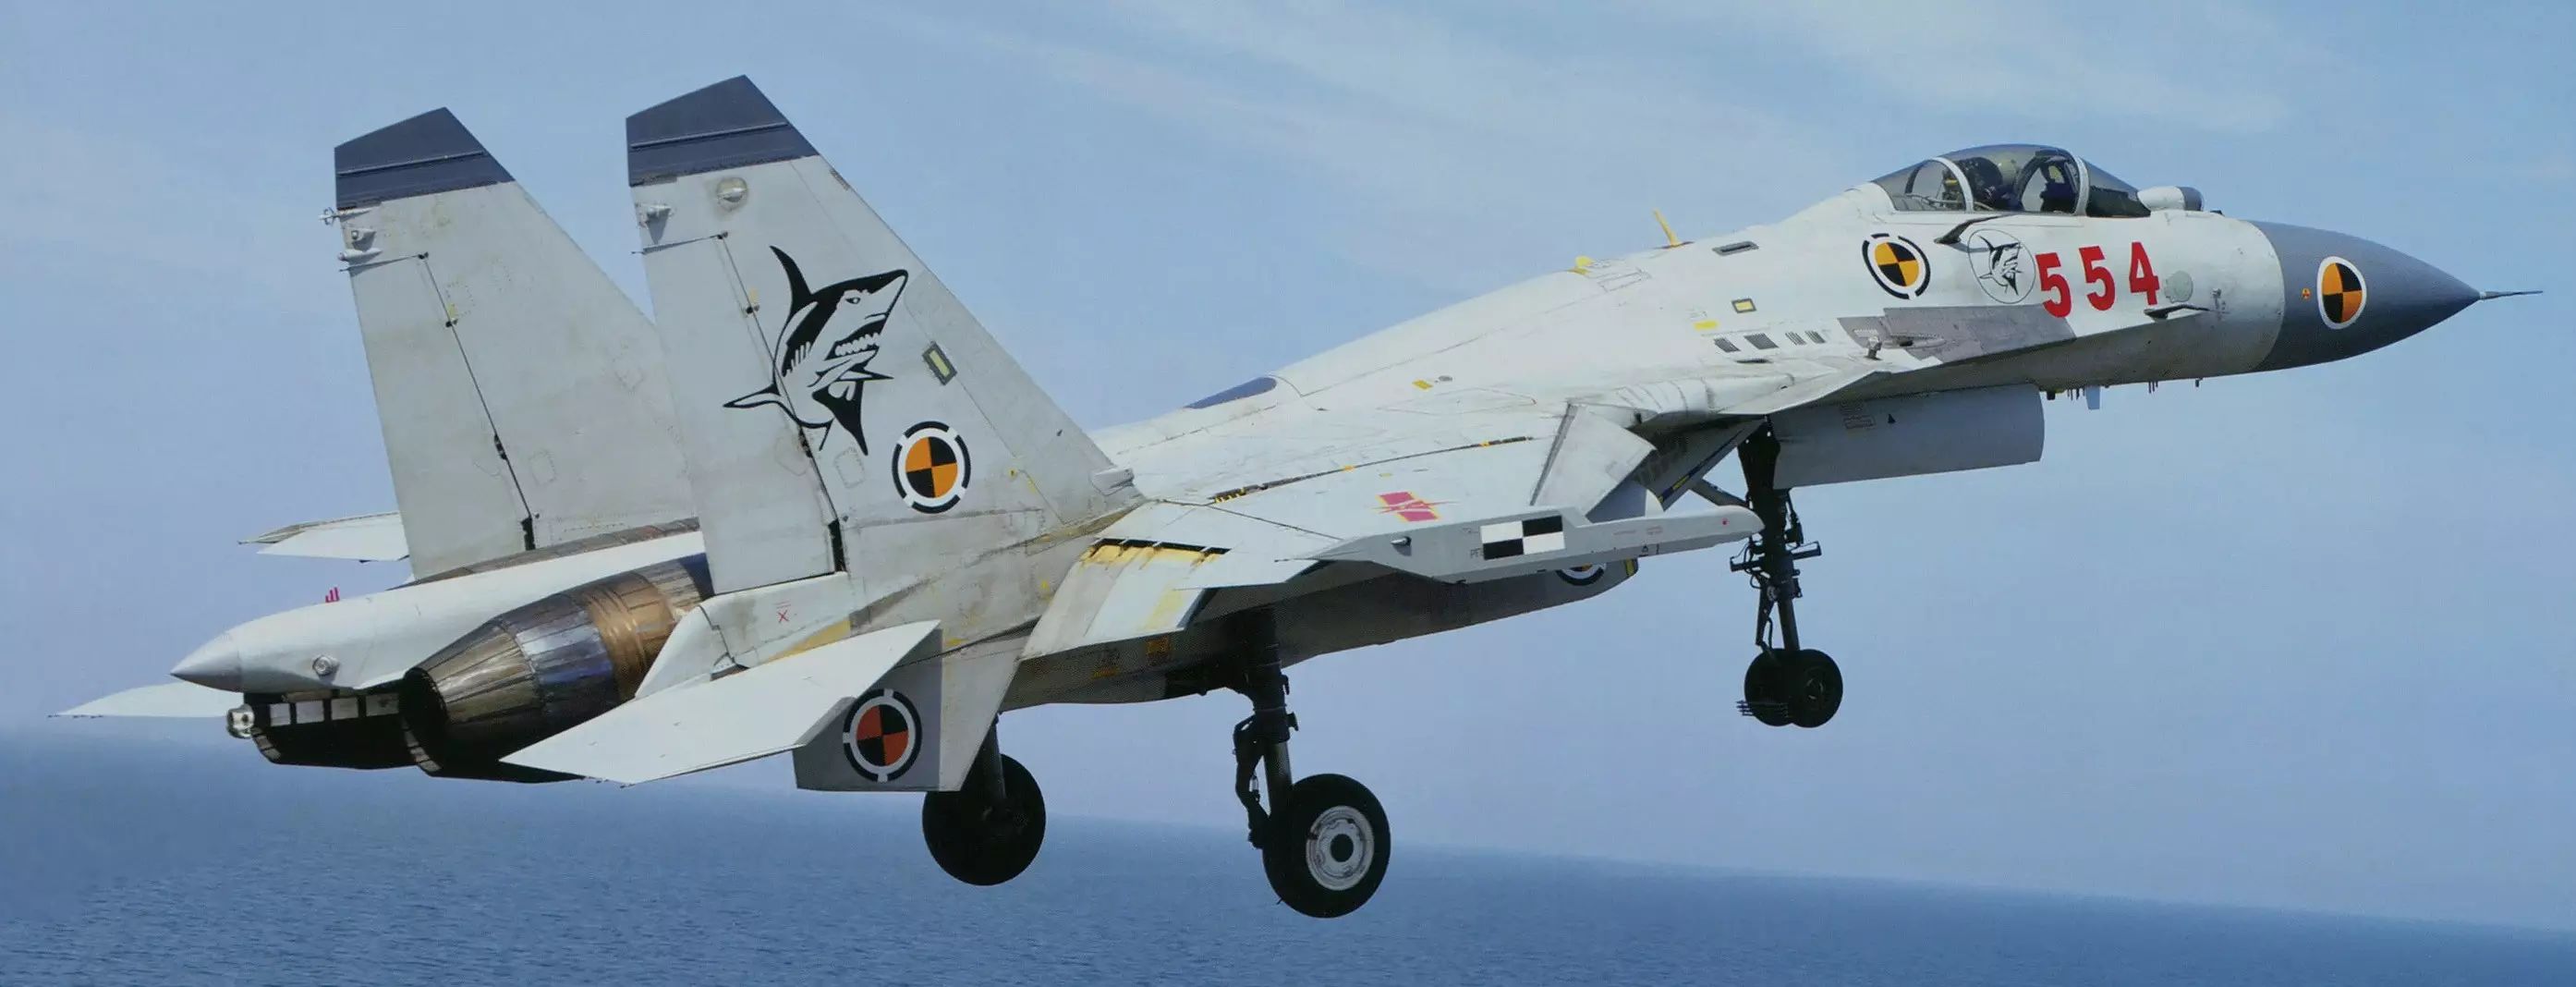 歼-15舰载战斗机,北约代号"flying shark"(飞鲨)